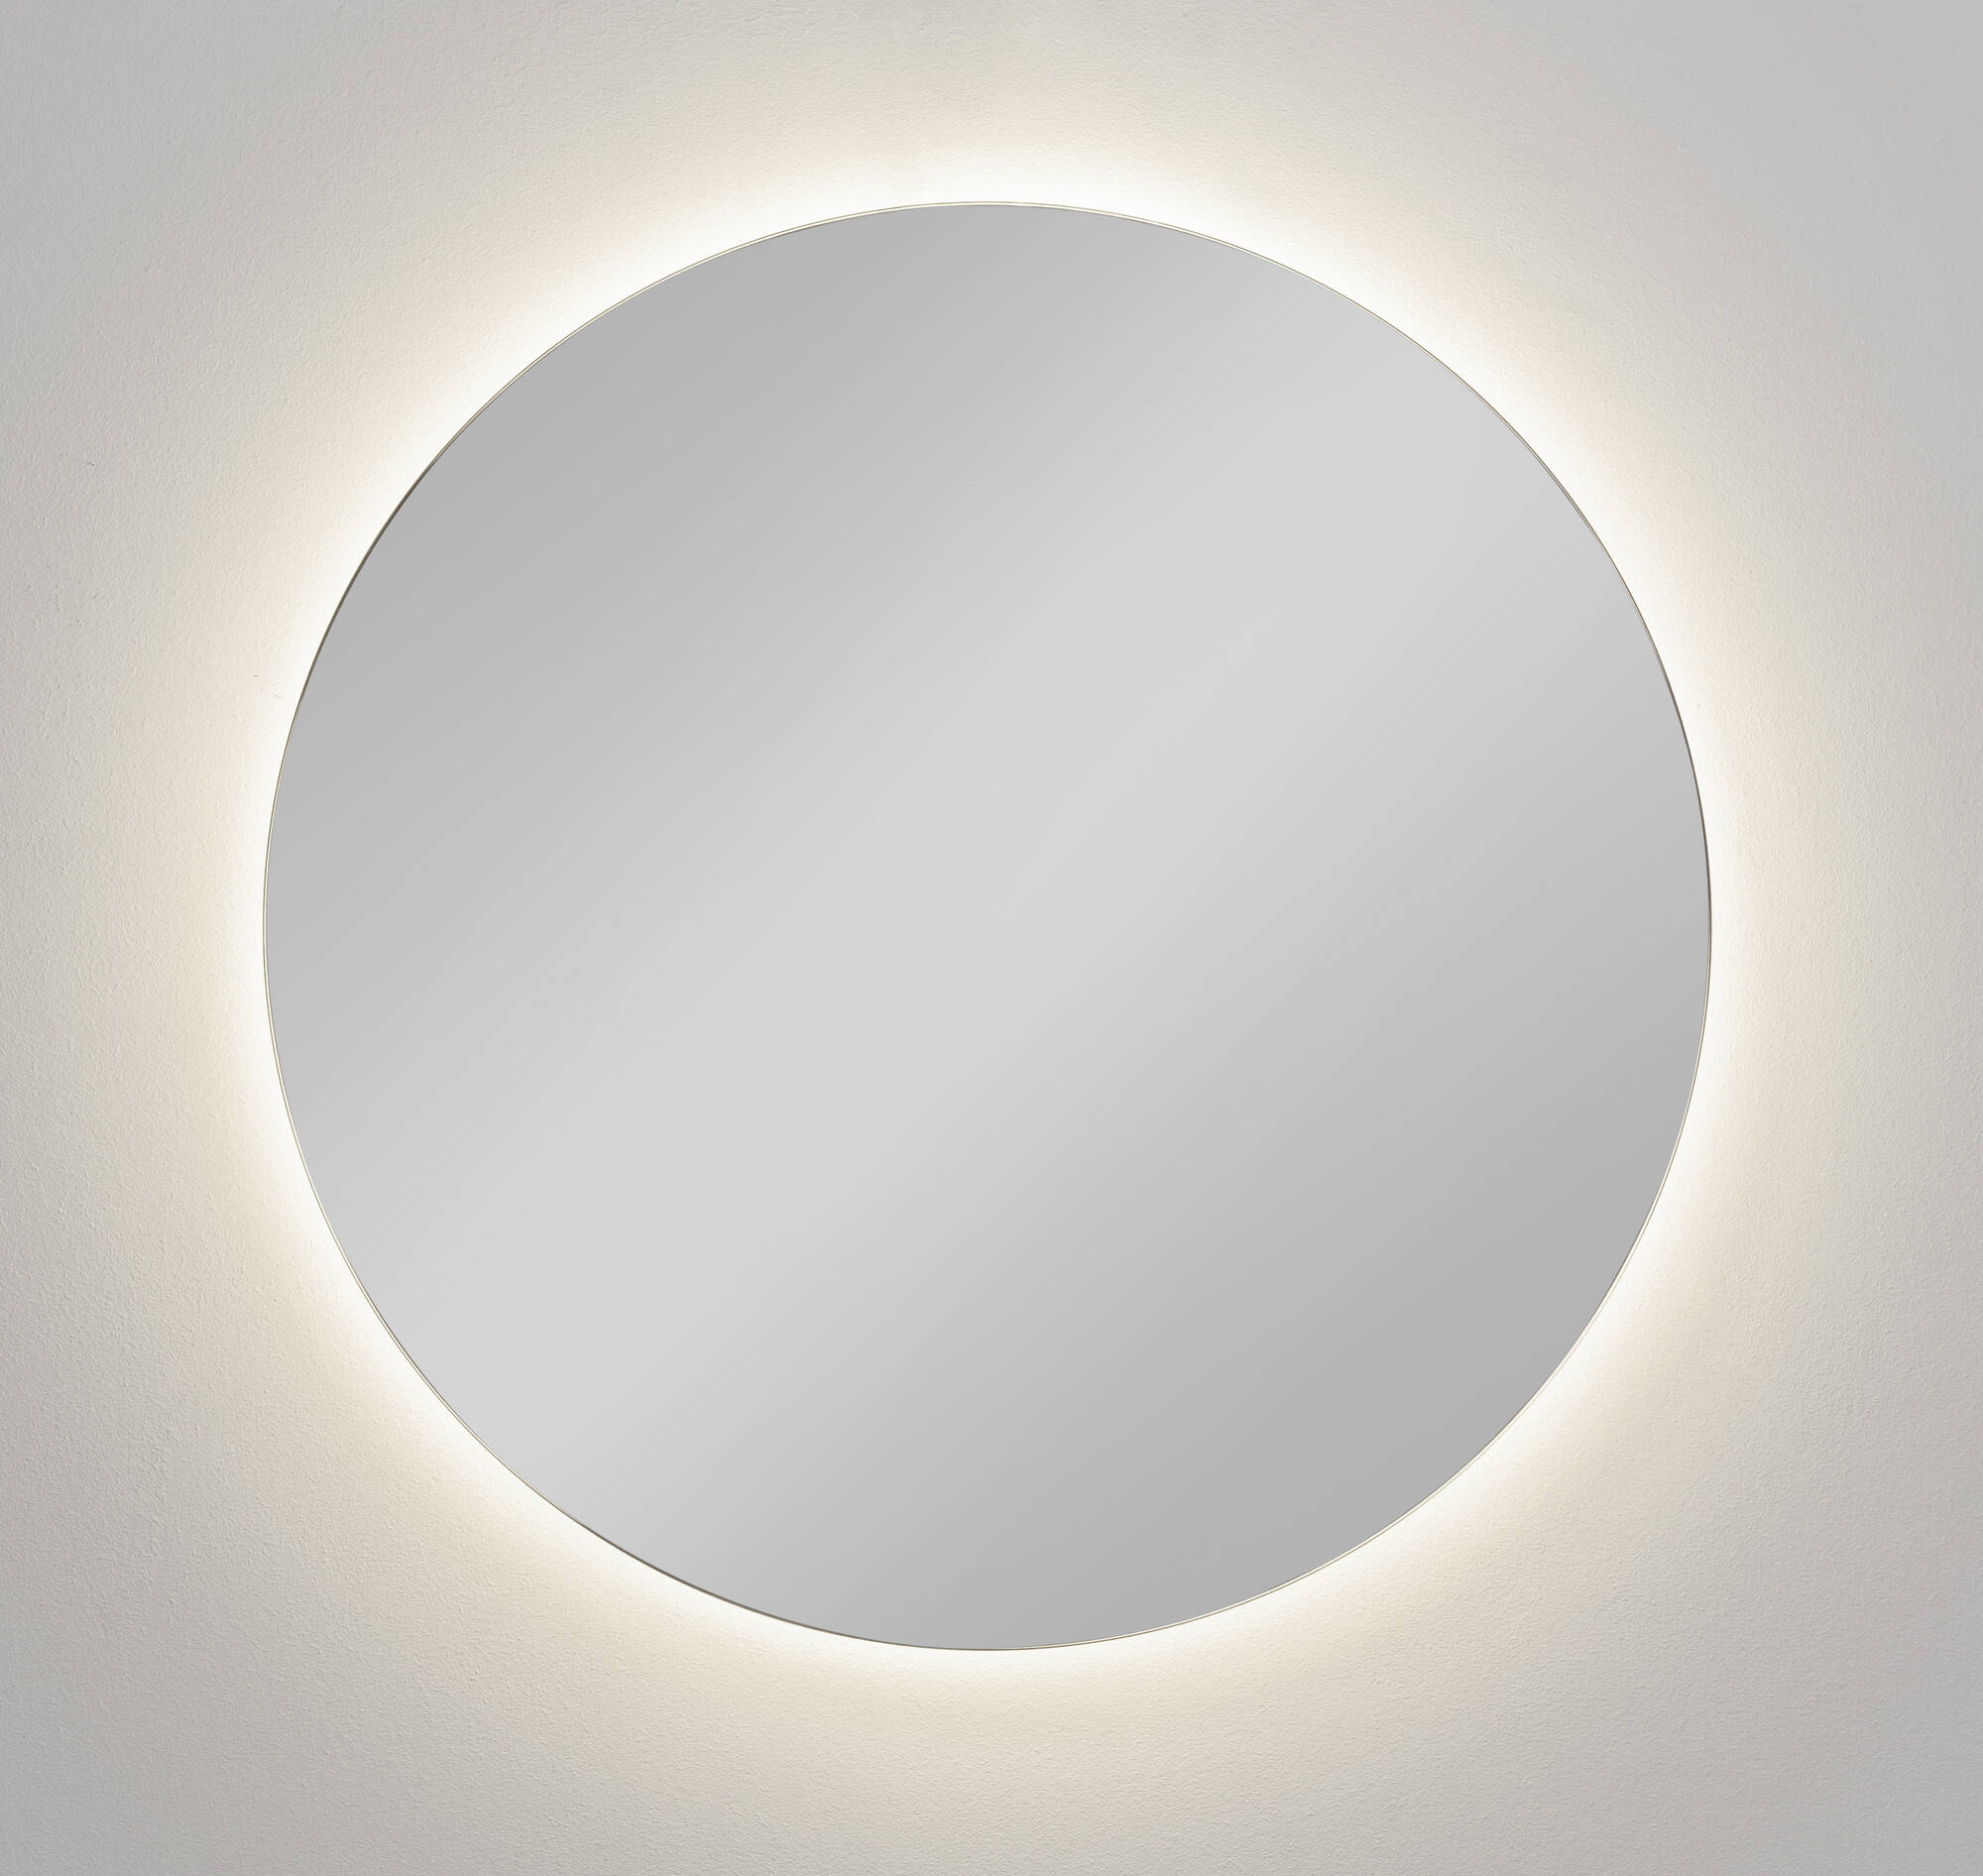 Ben Moon Spiegel met verlichting Ø 120 cm